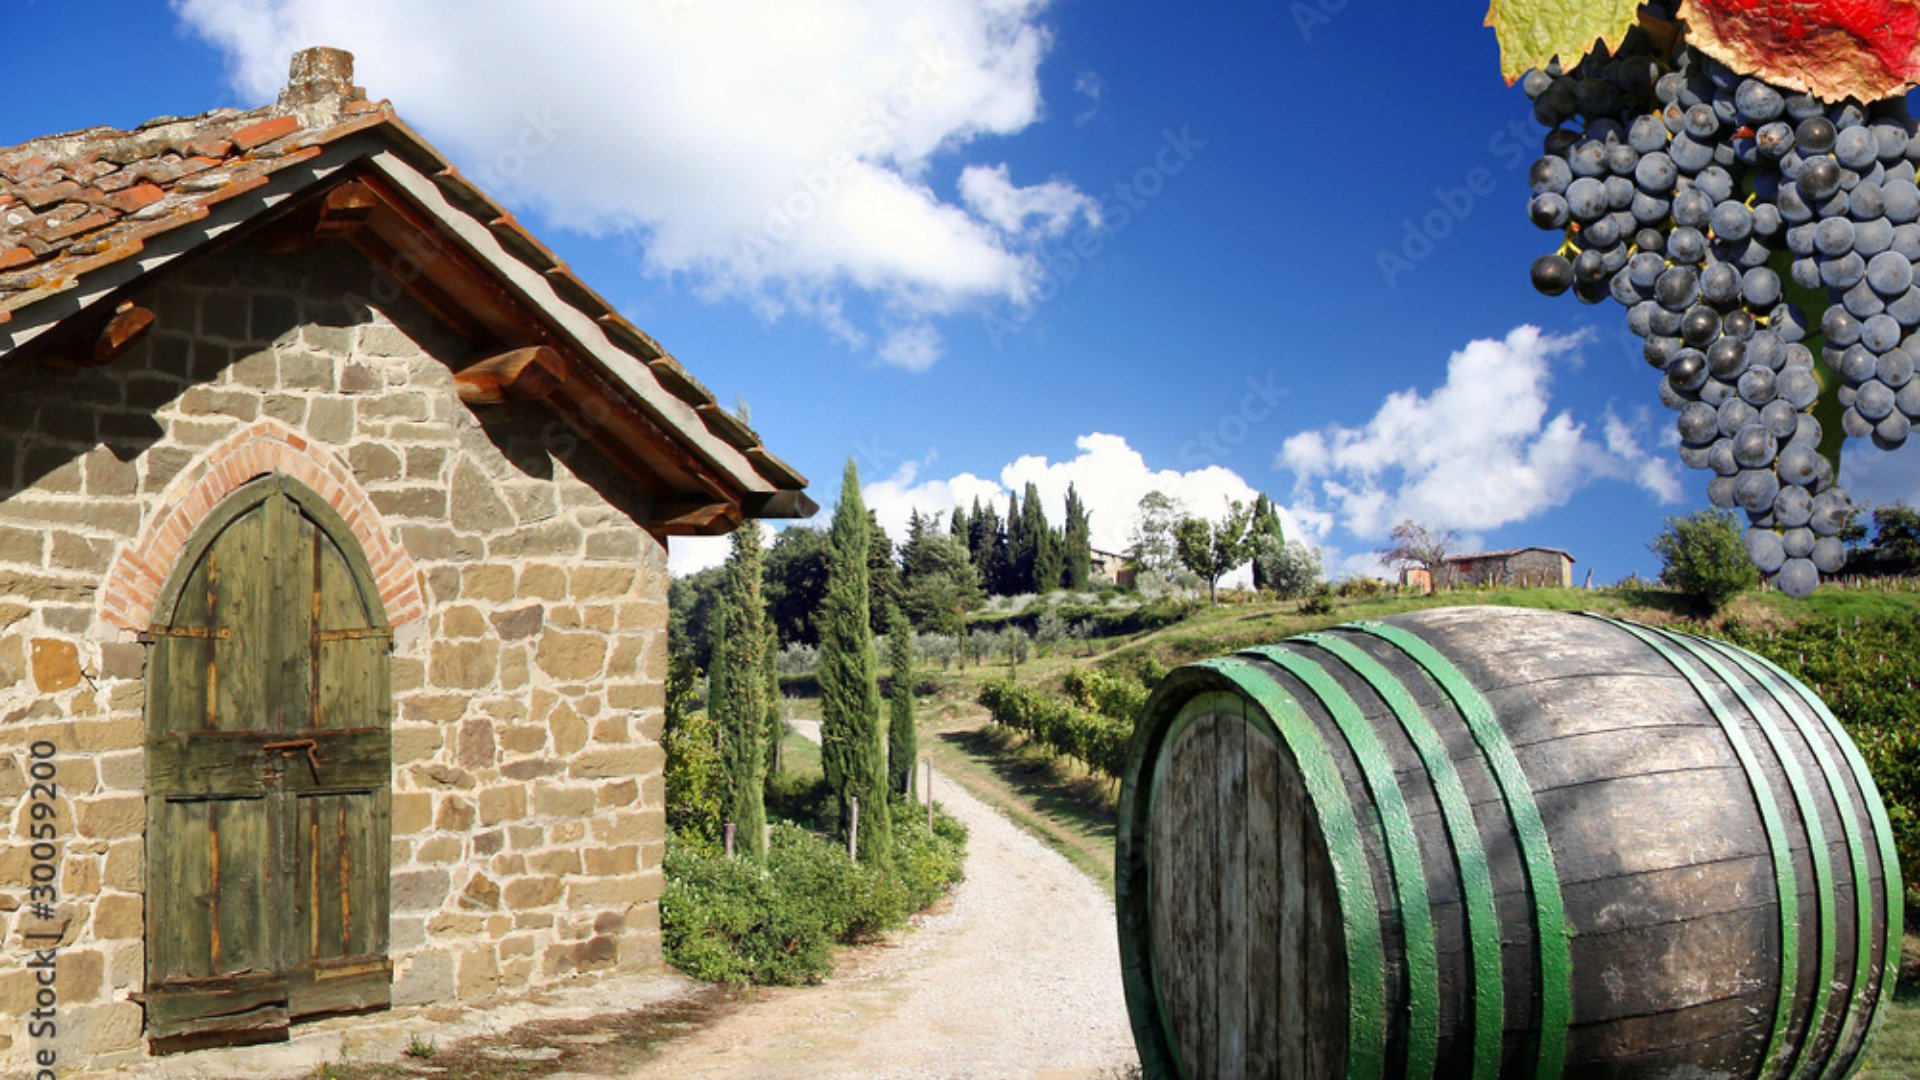 Immagine esplicativa gruppo Degustazione Vini Umbria: Un viaggio nelle rinomate cantine umbre